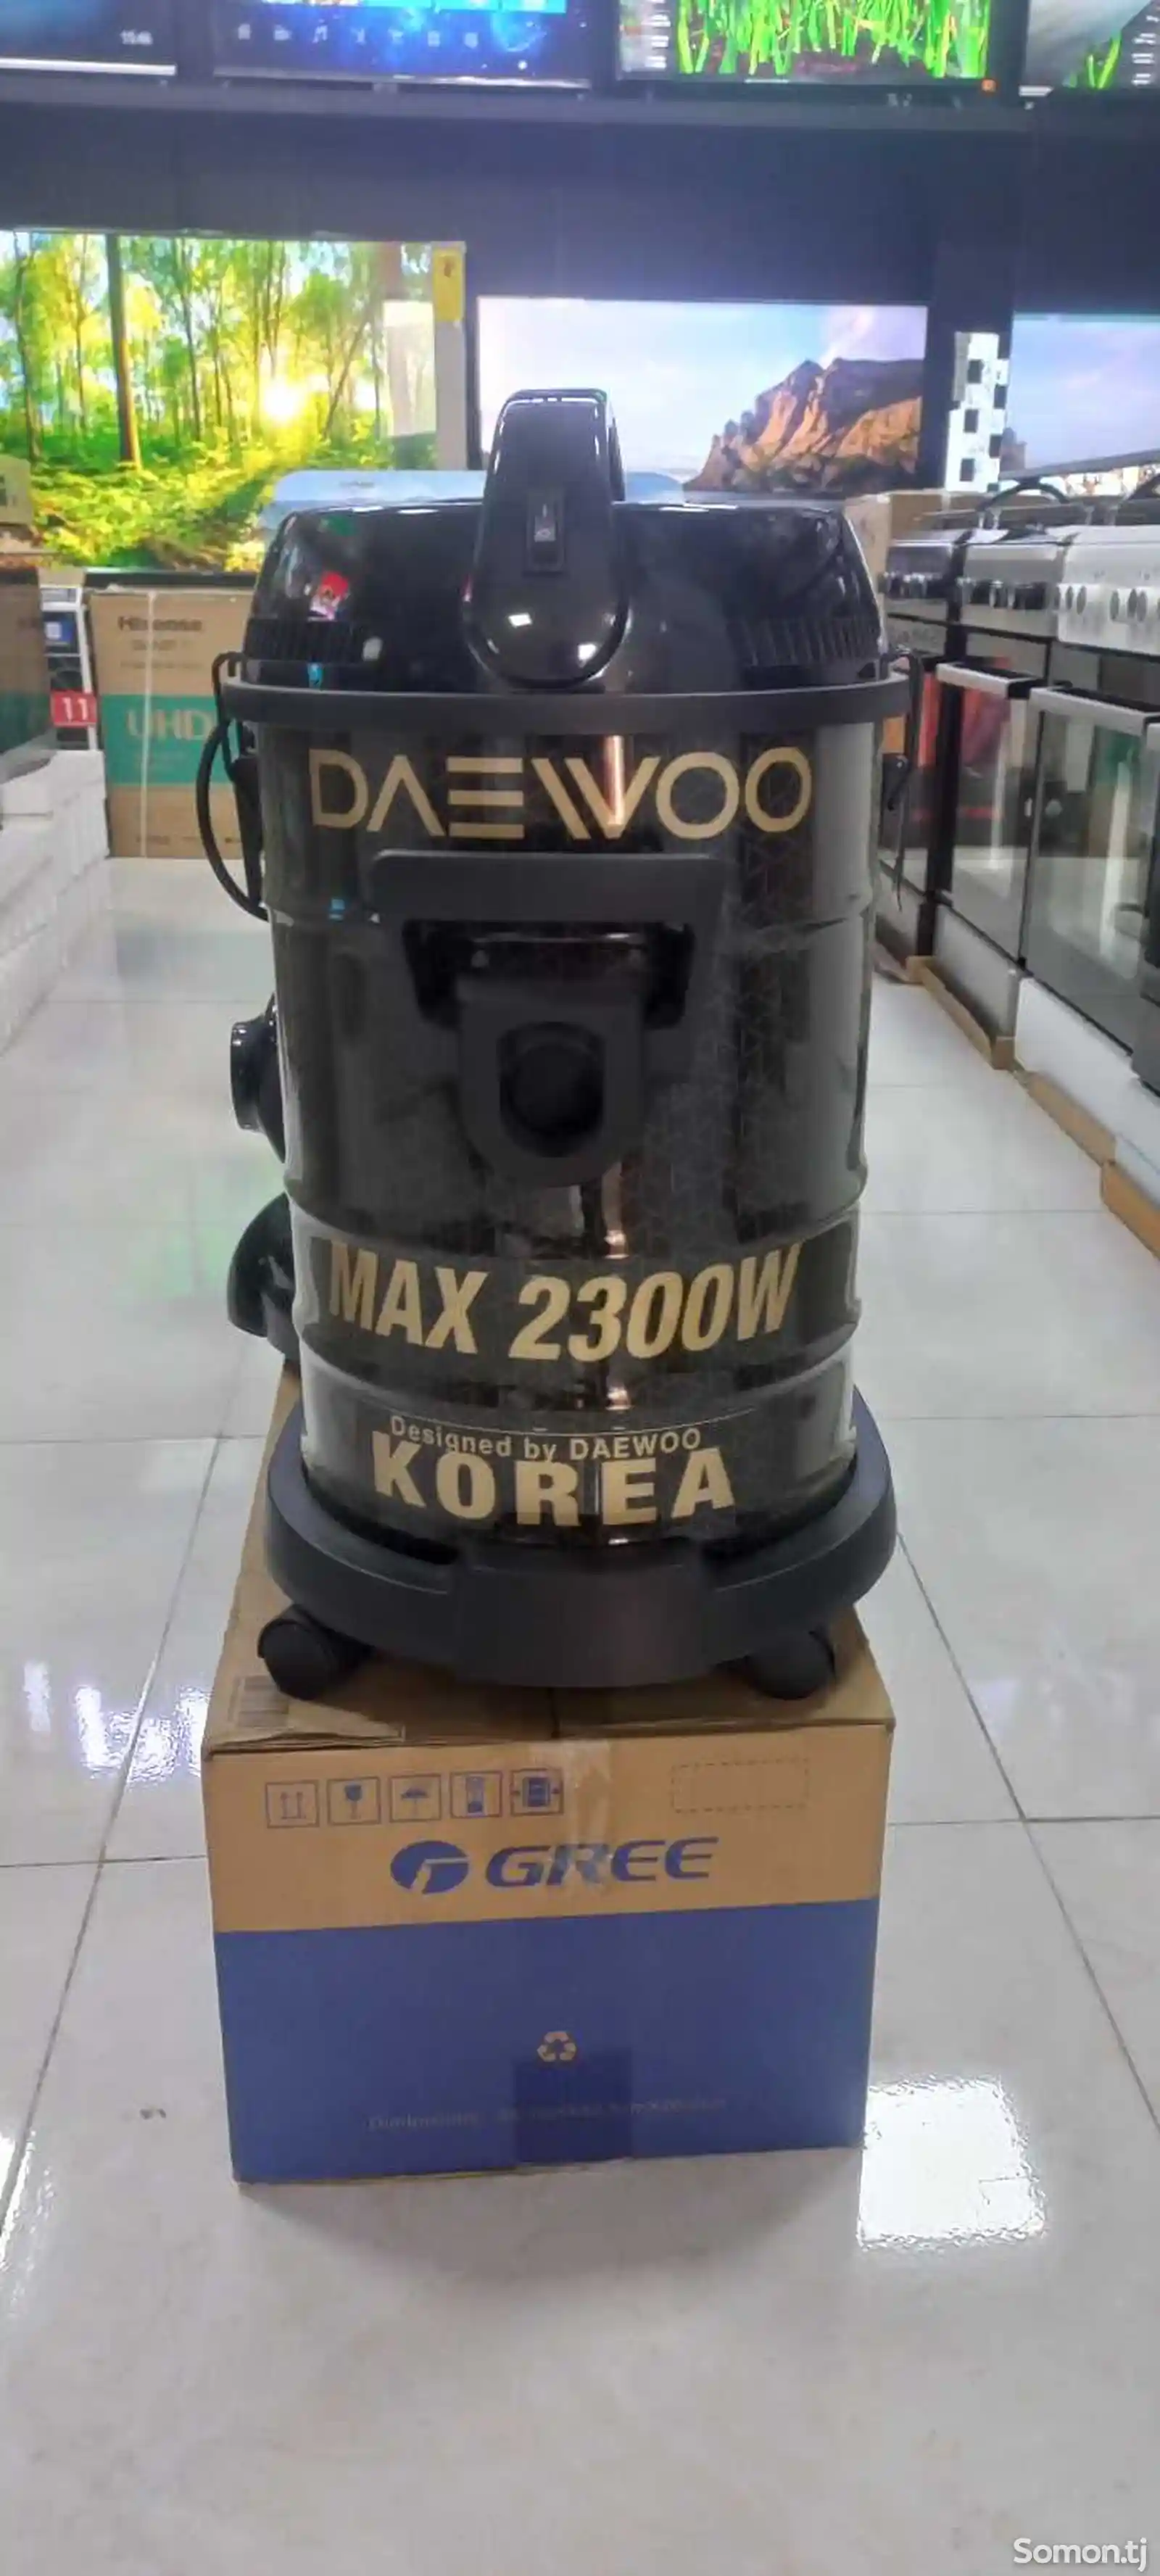 Пылесос Daewoo Korea